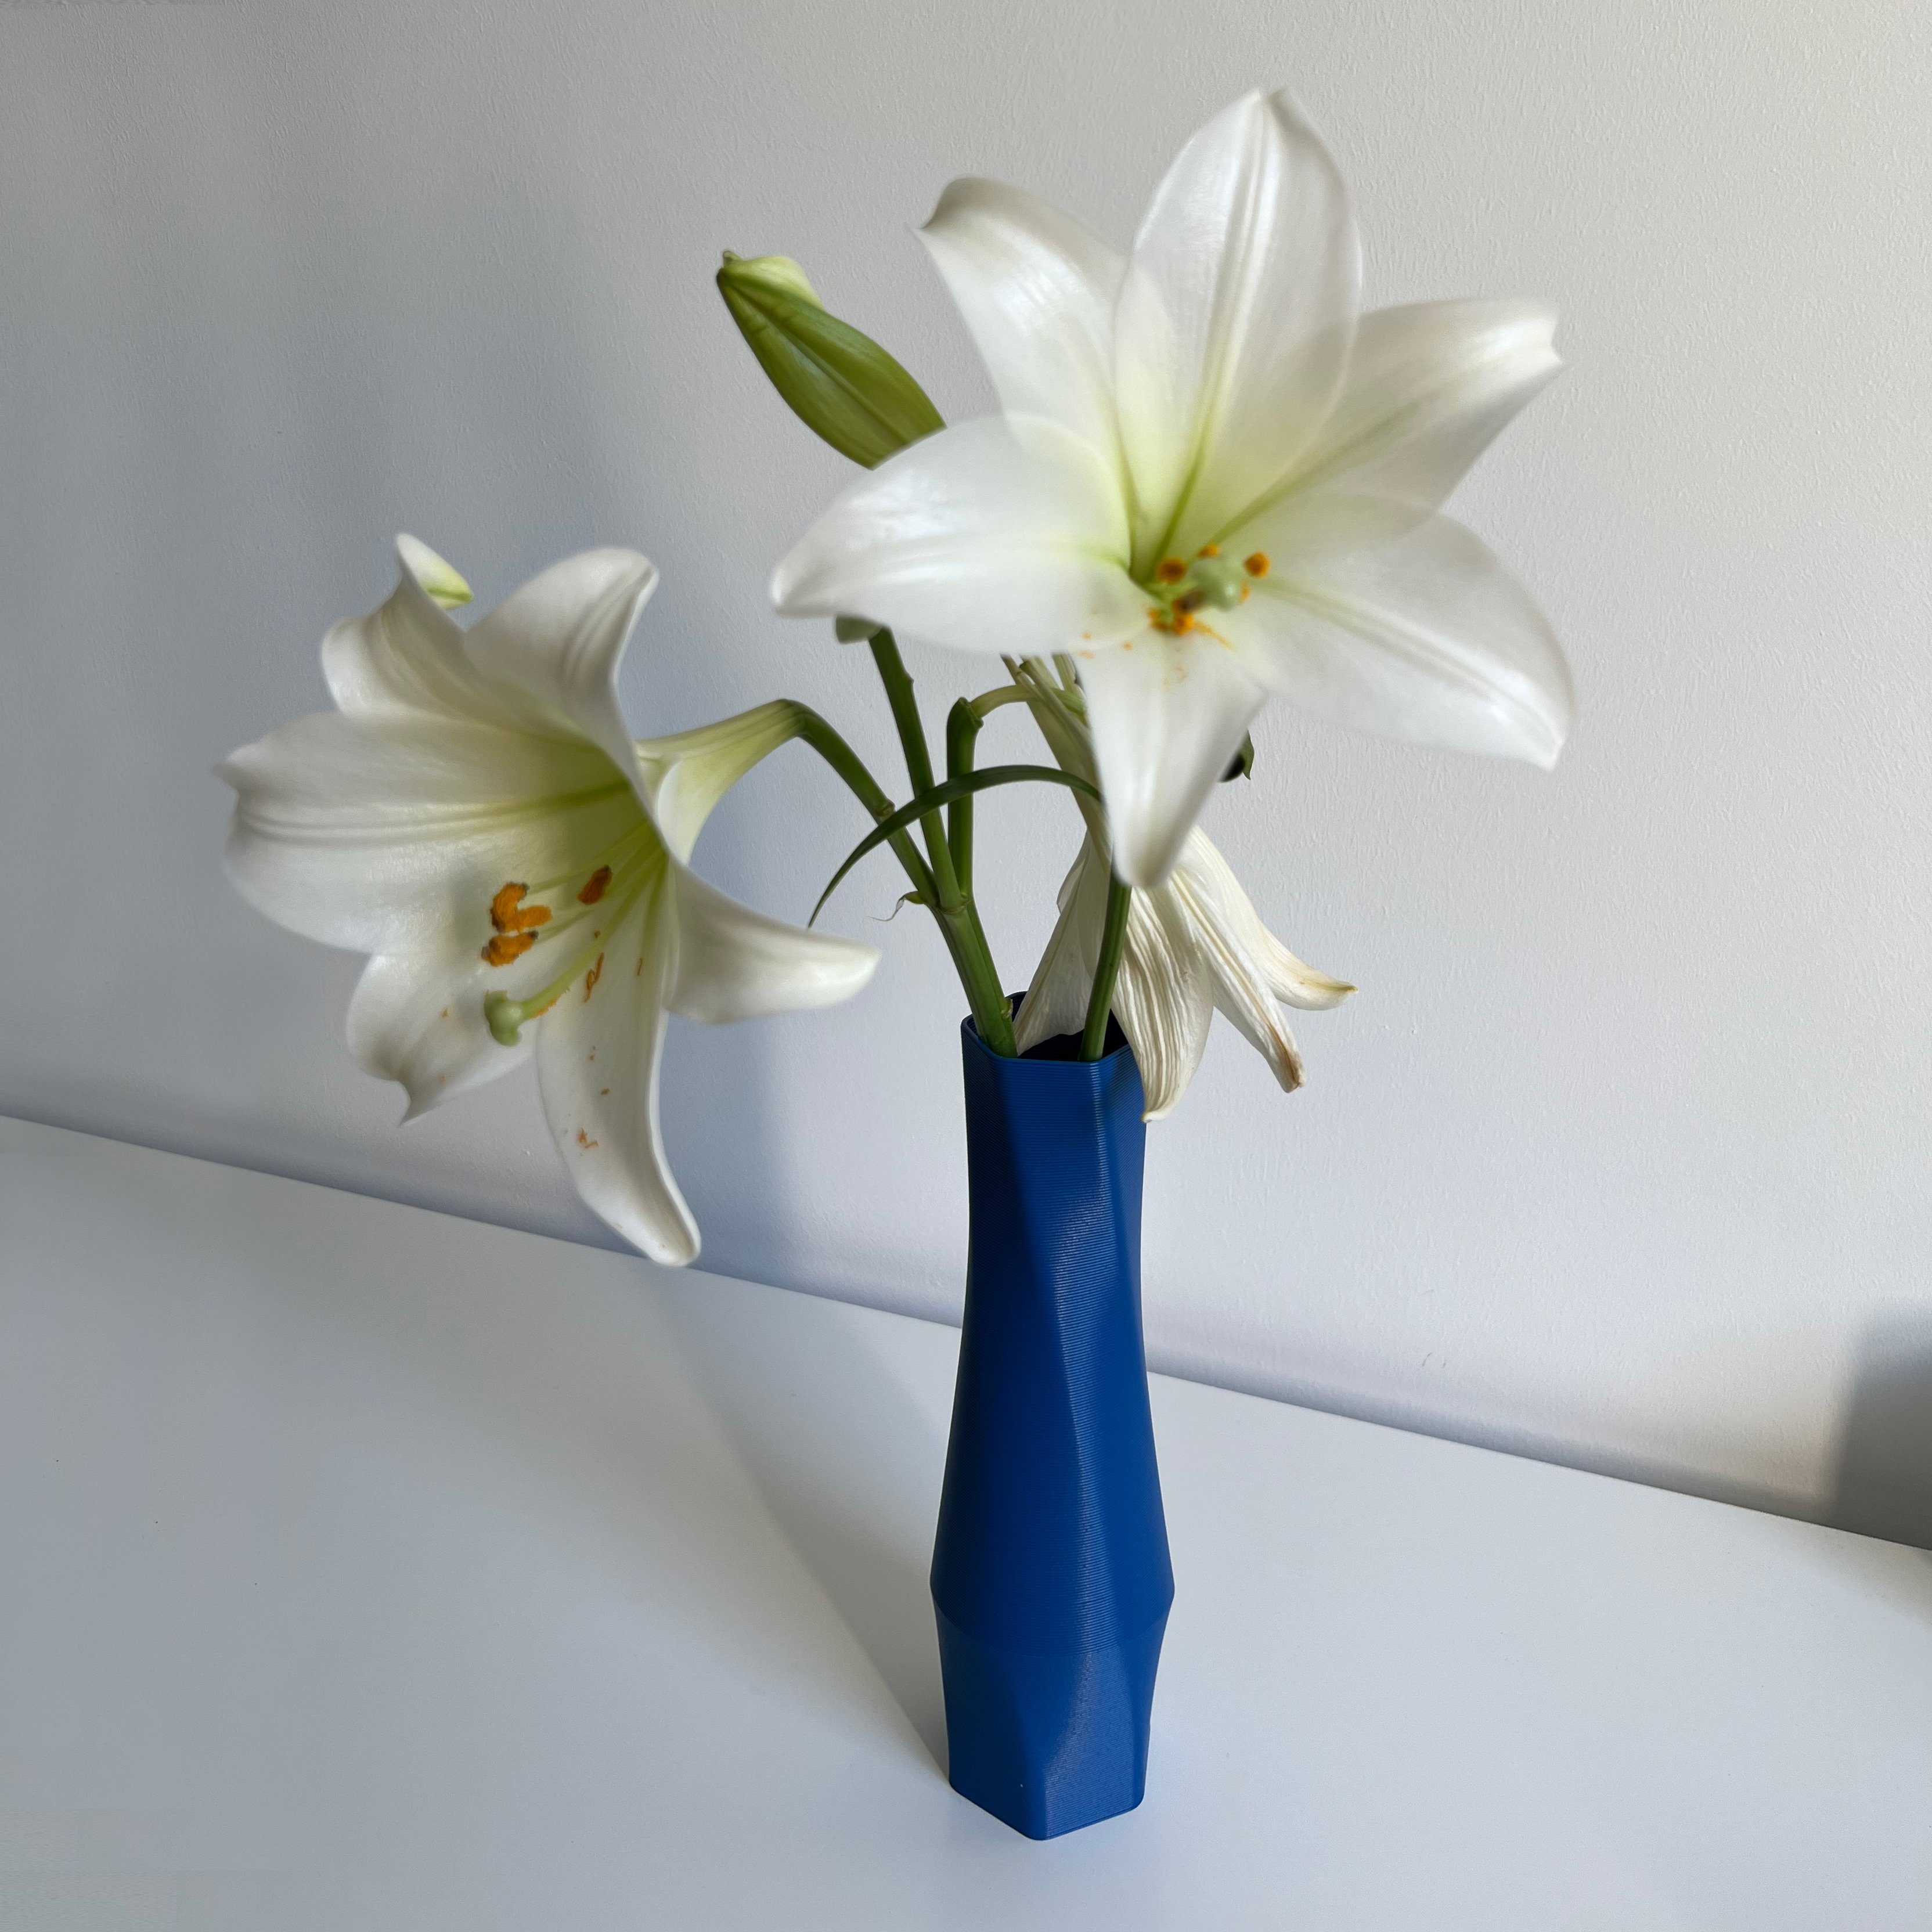 Farben, Shapes Blau Vase), vase Dekovase 3D-Druck Wasserdicht; Decorations Leichte innerhalb Materials Struktur 1 viele - the - (basic), (Rillung) 3D Vasen, (Einzelmodell, des 100% hexagon